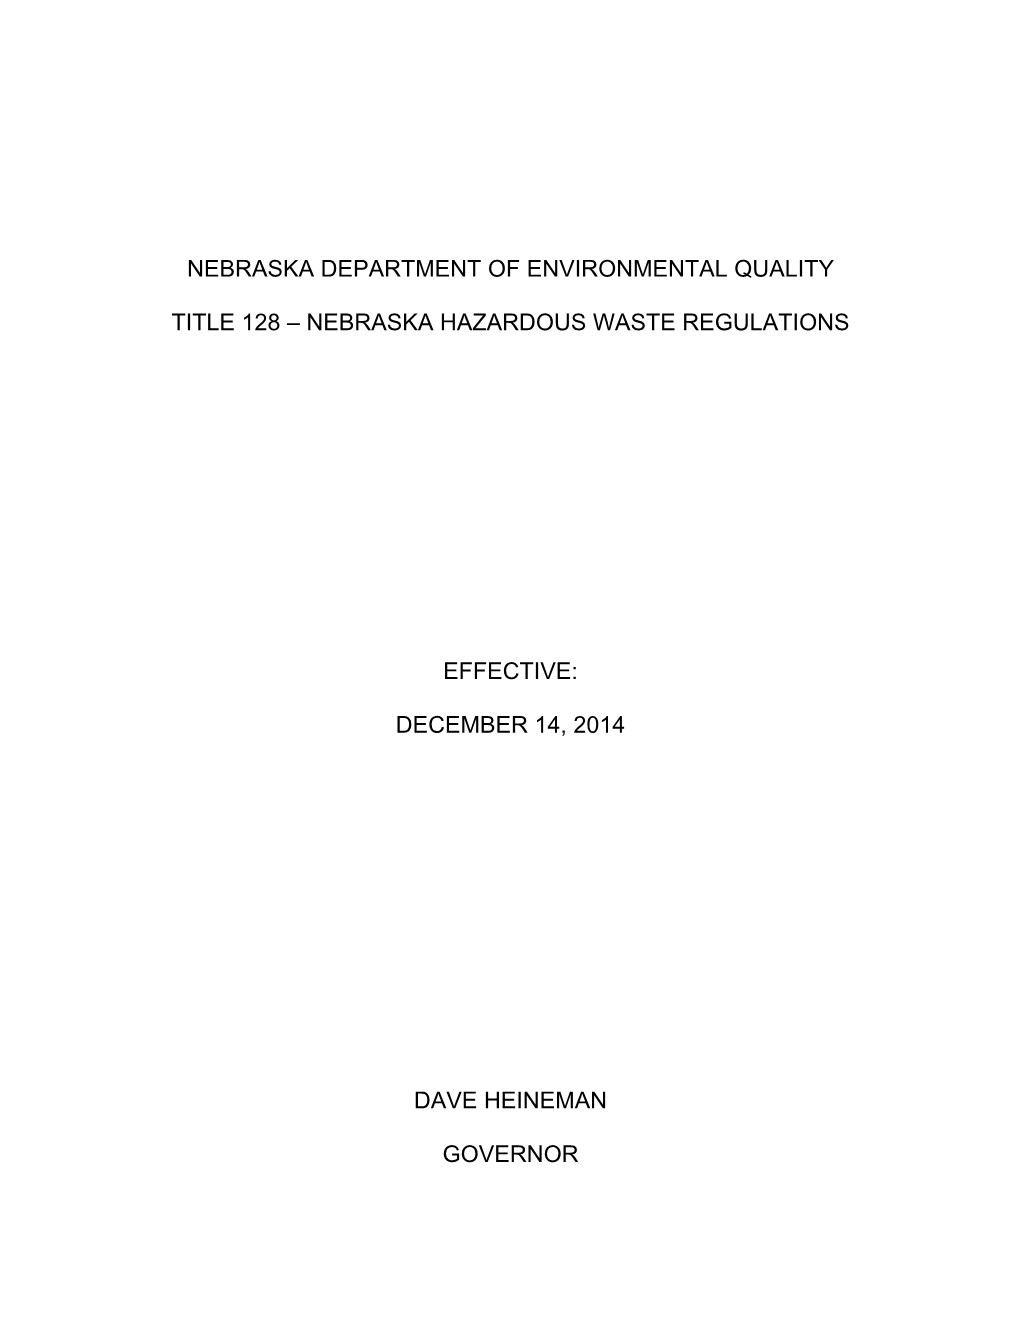 Nebraska Hazardous Waste Regulations Effective